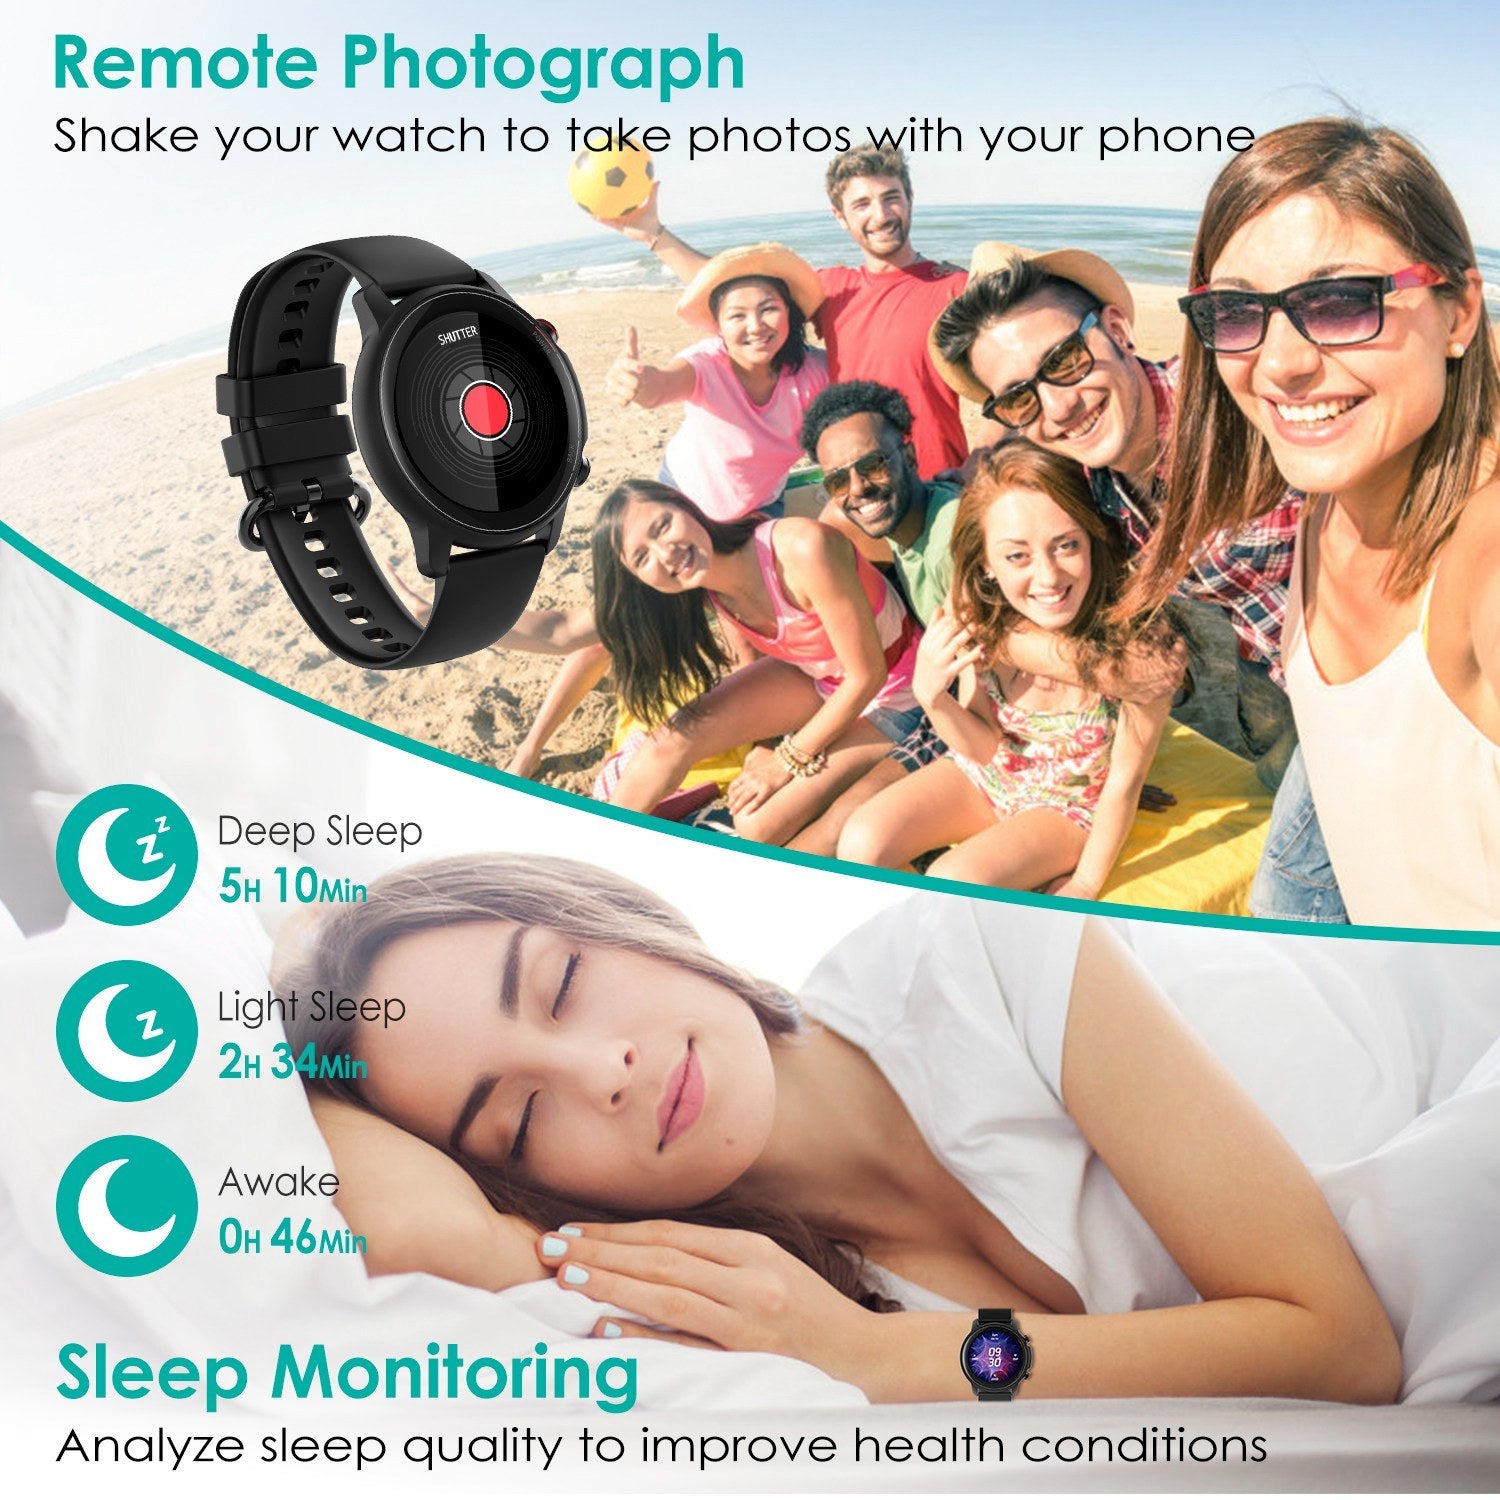 Wireless Smart Watch Fitness Tracker for Men Women 1.32in IP68 Waterproof Full Touch Sport Bracelet Wrist Watch with Heart Rate Blood Pressure Sleep Monitor Pedometer